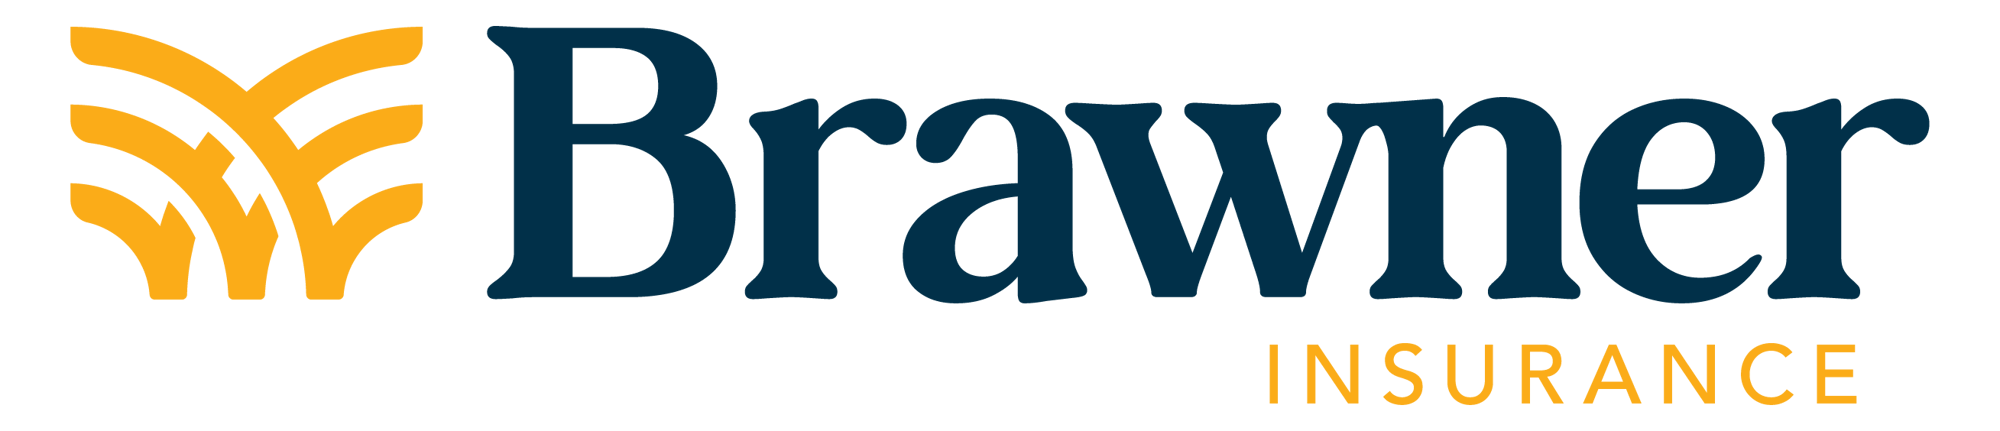 Brawner Insurance-04-1